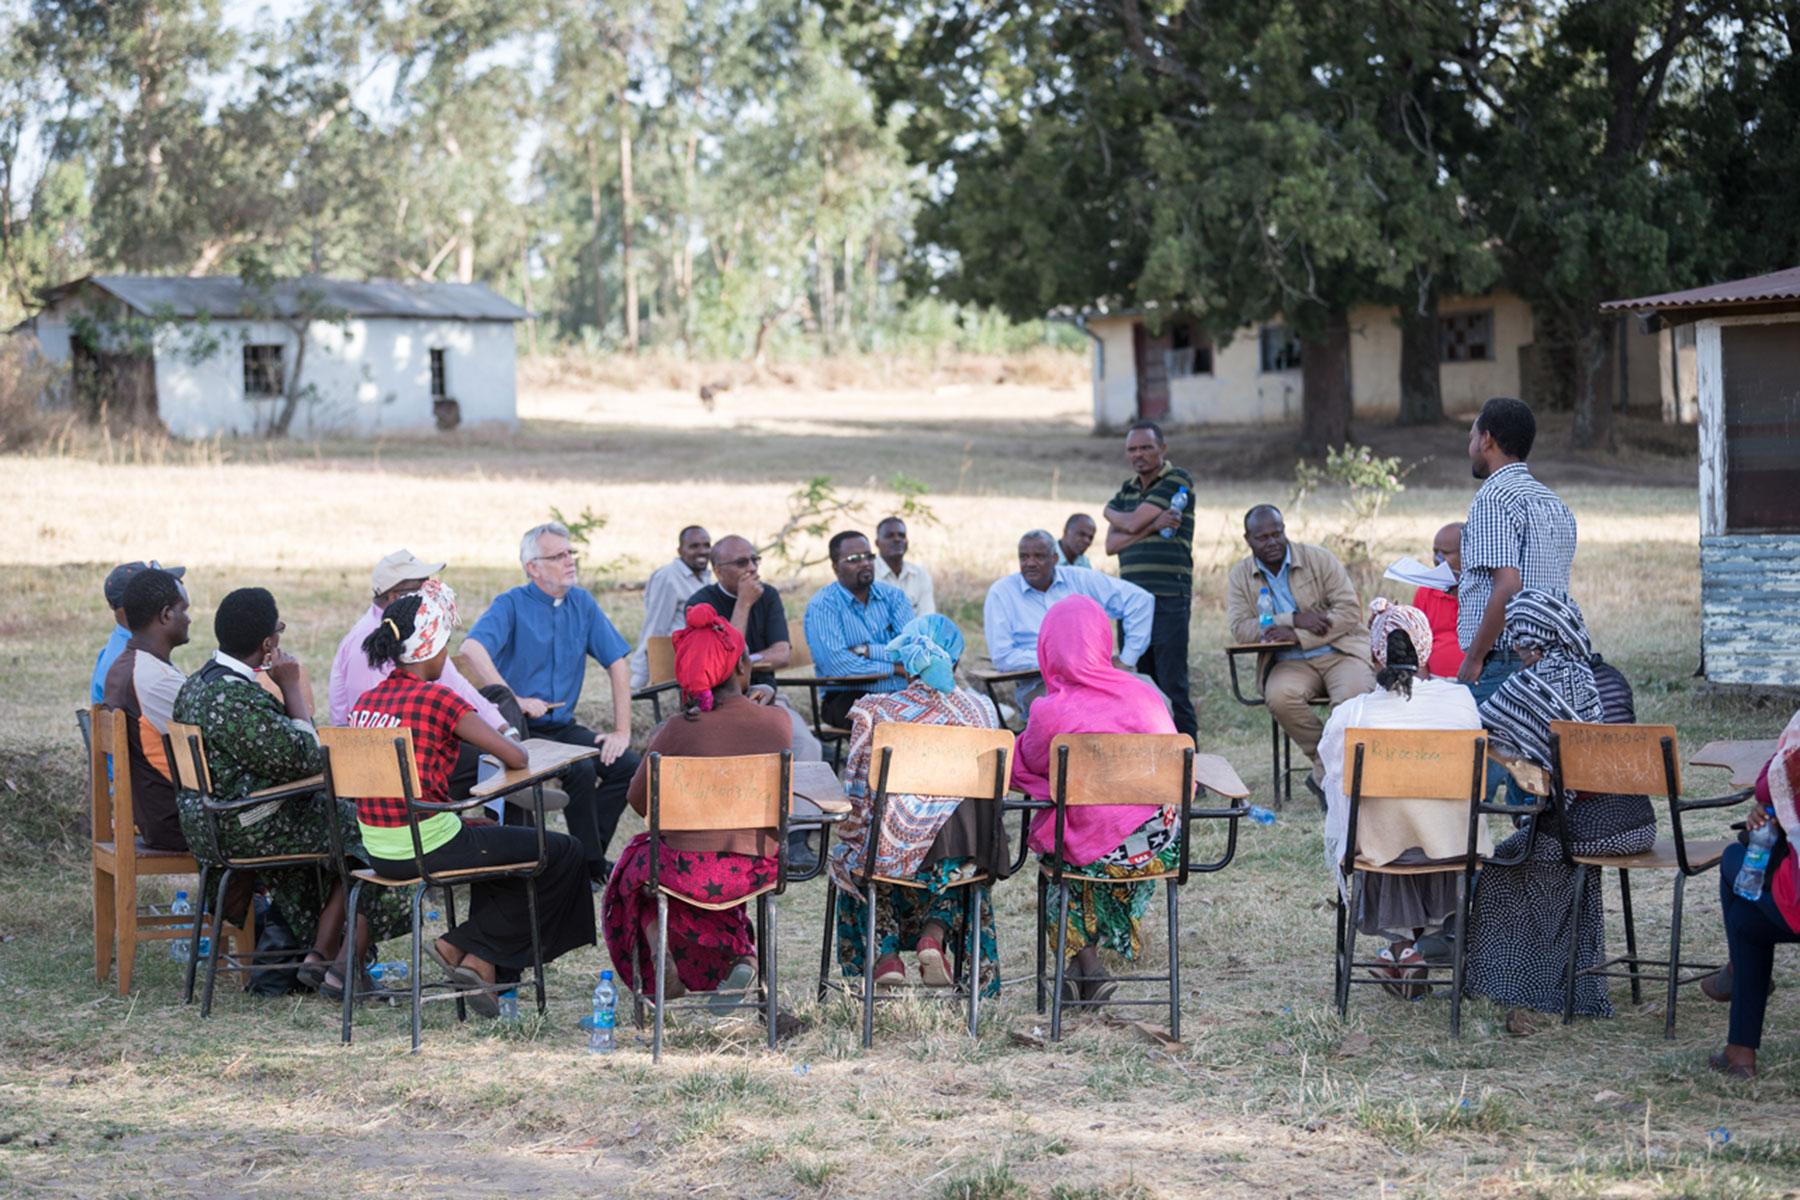 Im Rahmen eines Besuchs bei der ÄEKMY begegnen LWB-Generalsekretär Martin Junge und die LWB-Delegation sowie äthiopische Kirchenleitende am 31. Januar Mitgliedern der Selbsthilfegruppe „Hundedo“ in Hadiya. Fotos: LWB/Albin Hillert